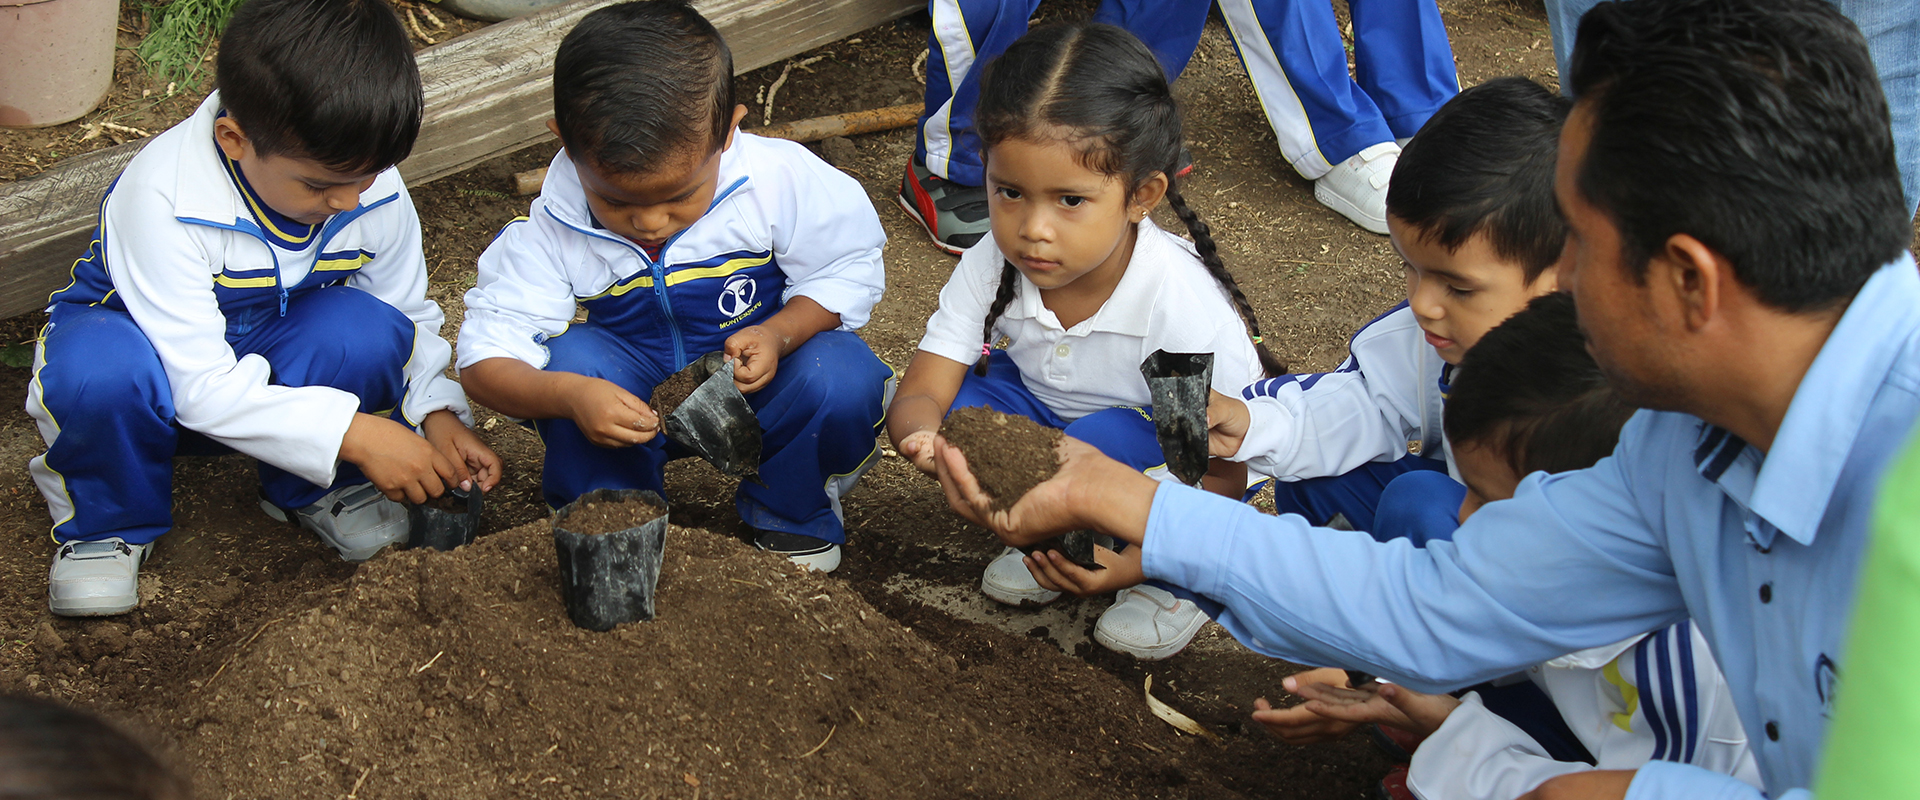 Actividad Educativa para Grupos Escolares, Tierra Viva, en el Museo del Agua, San Gabriel Chilac